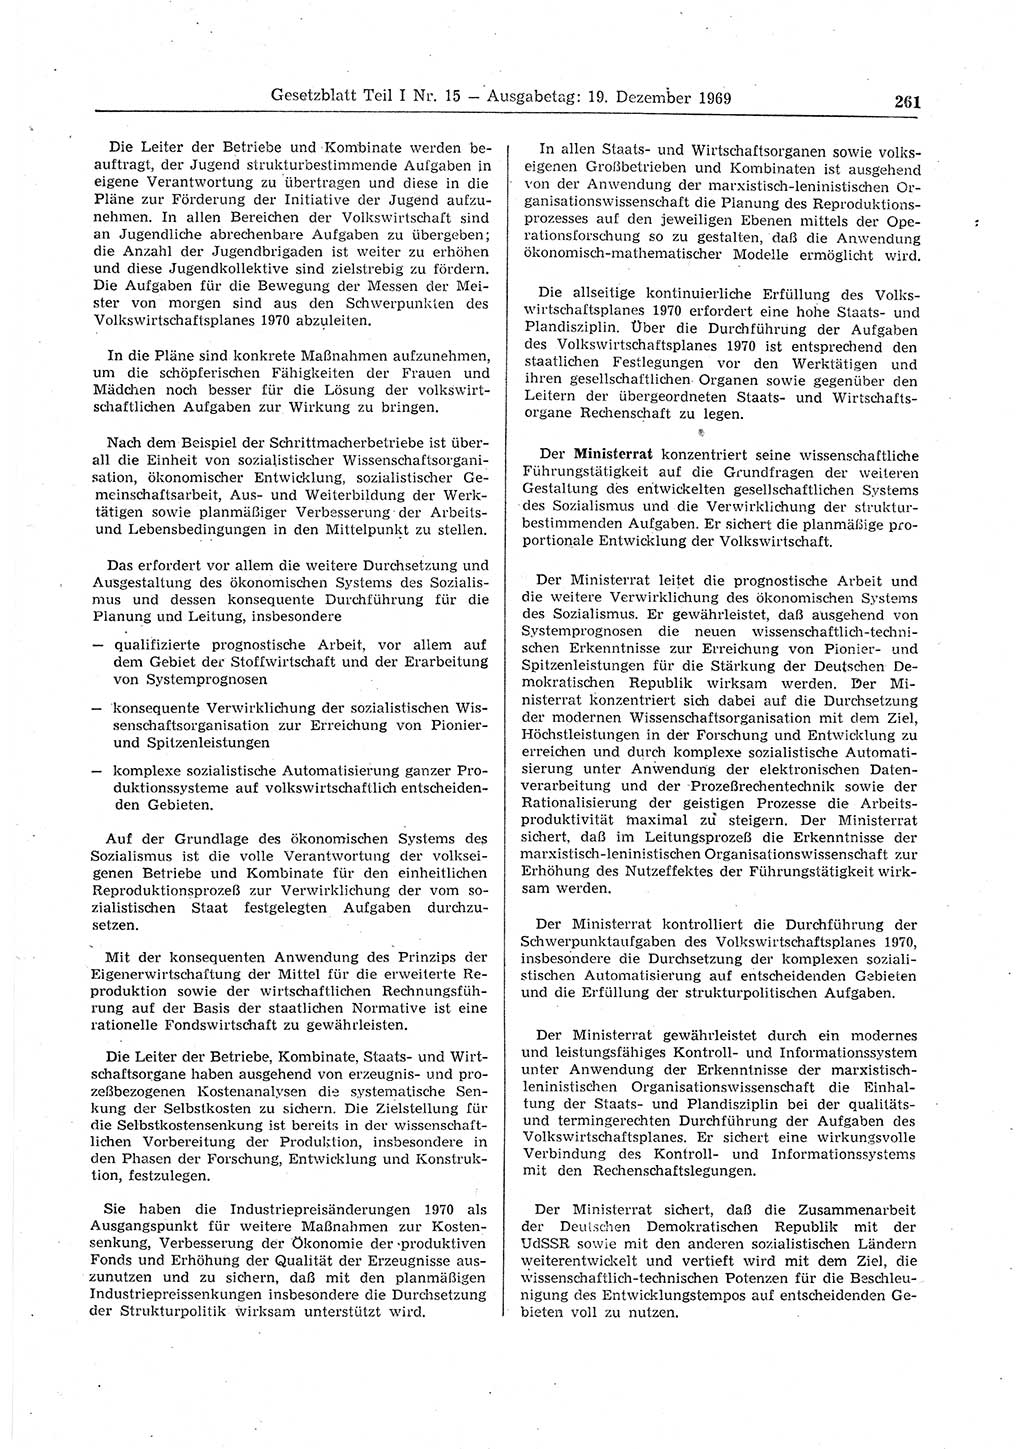 Gesetzblatt (GBl.) der Deutschen Demokratischen Republik (DDR) Teil Ⅰ 1969, Seite 261 (GBl. DDR Ⅰ 1969, S. 261)